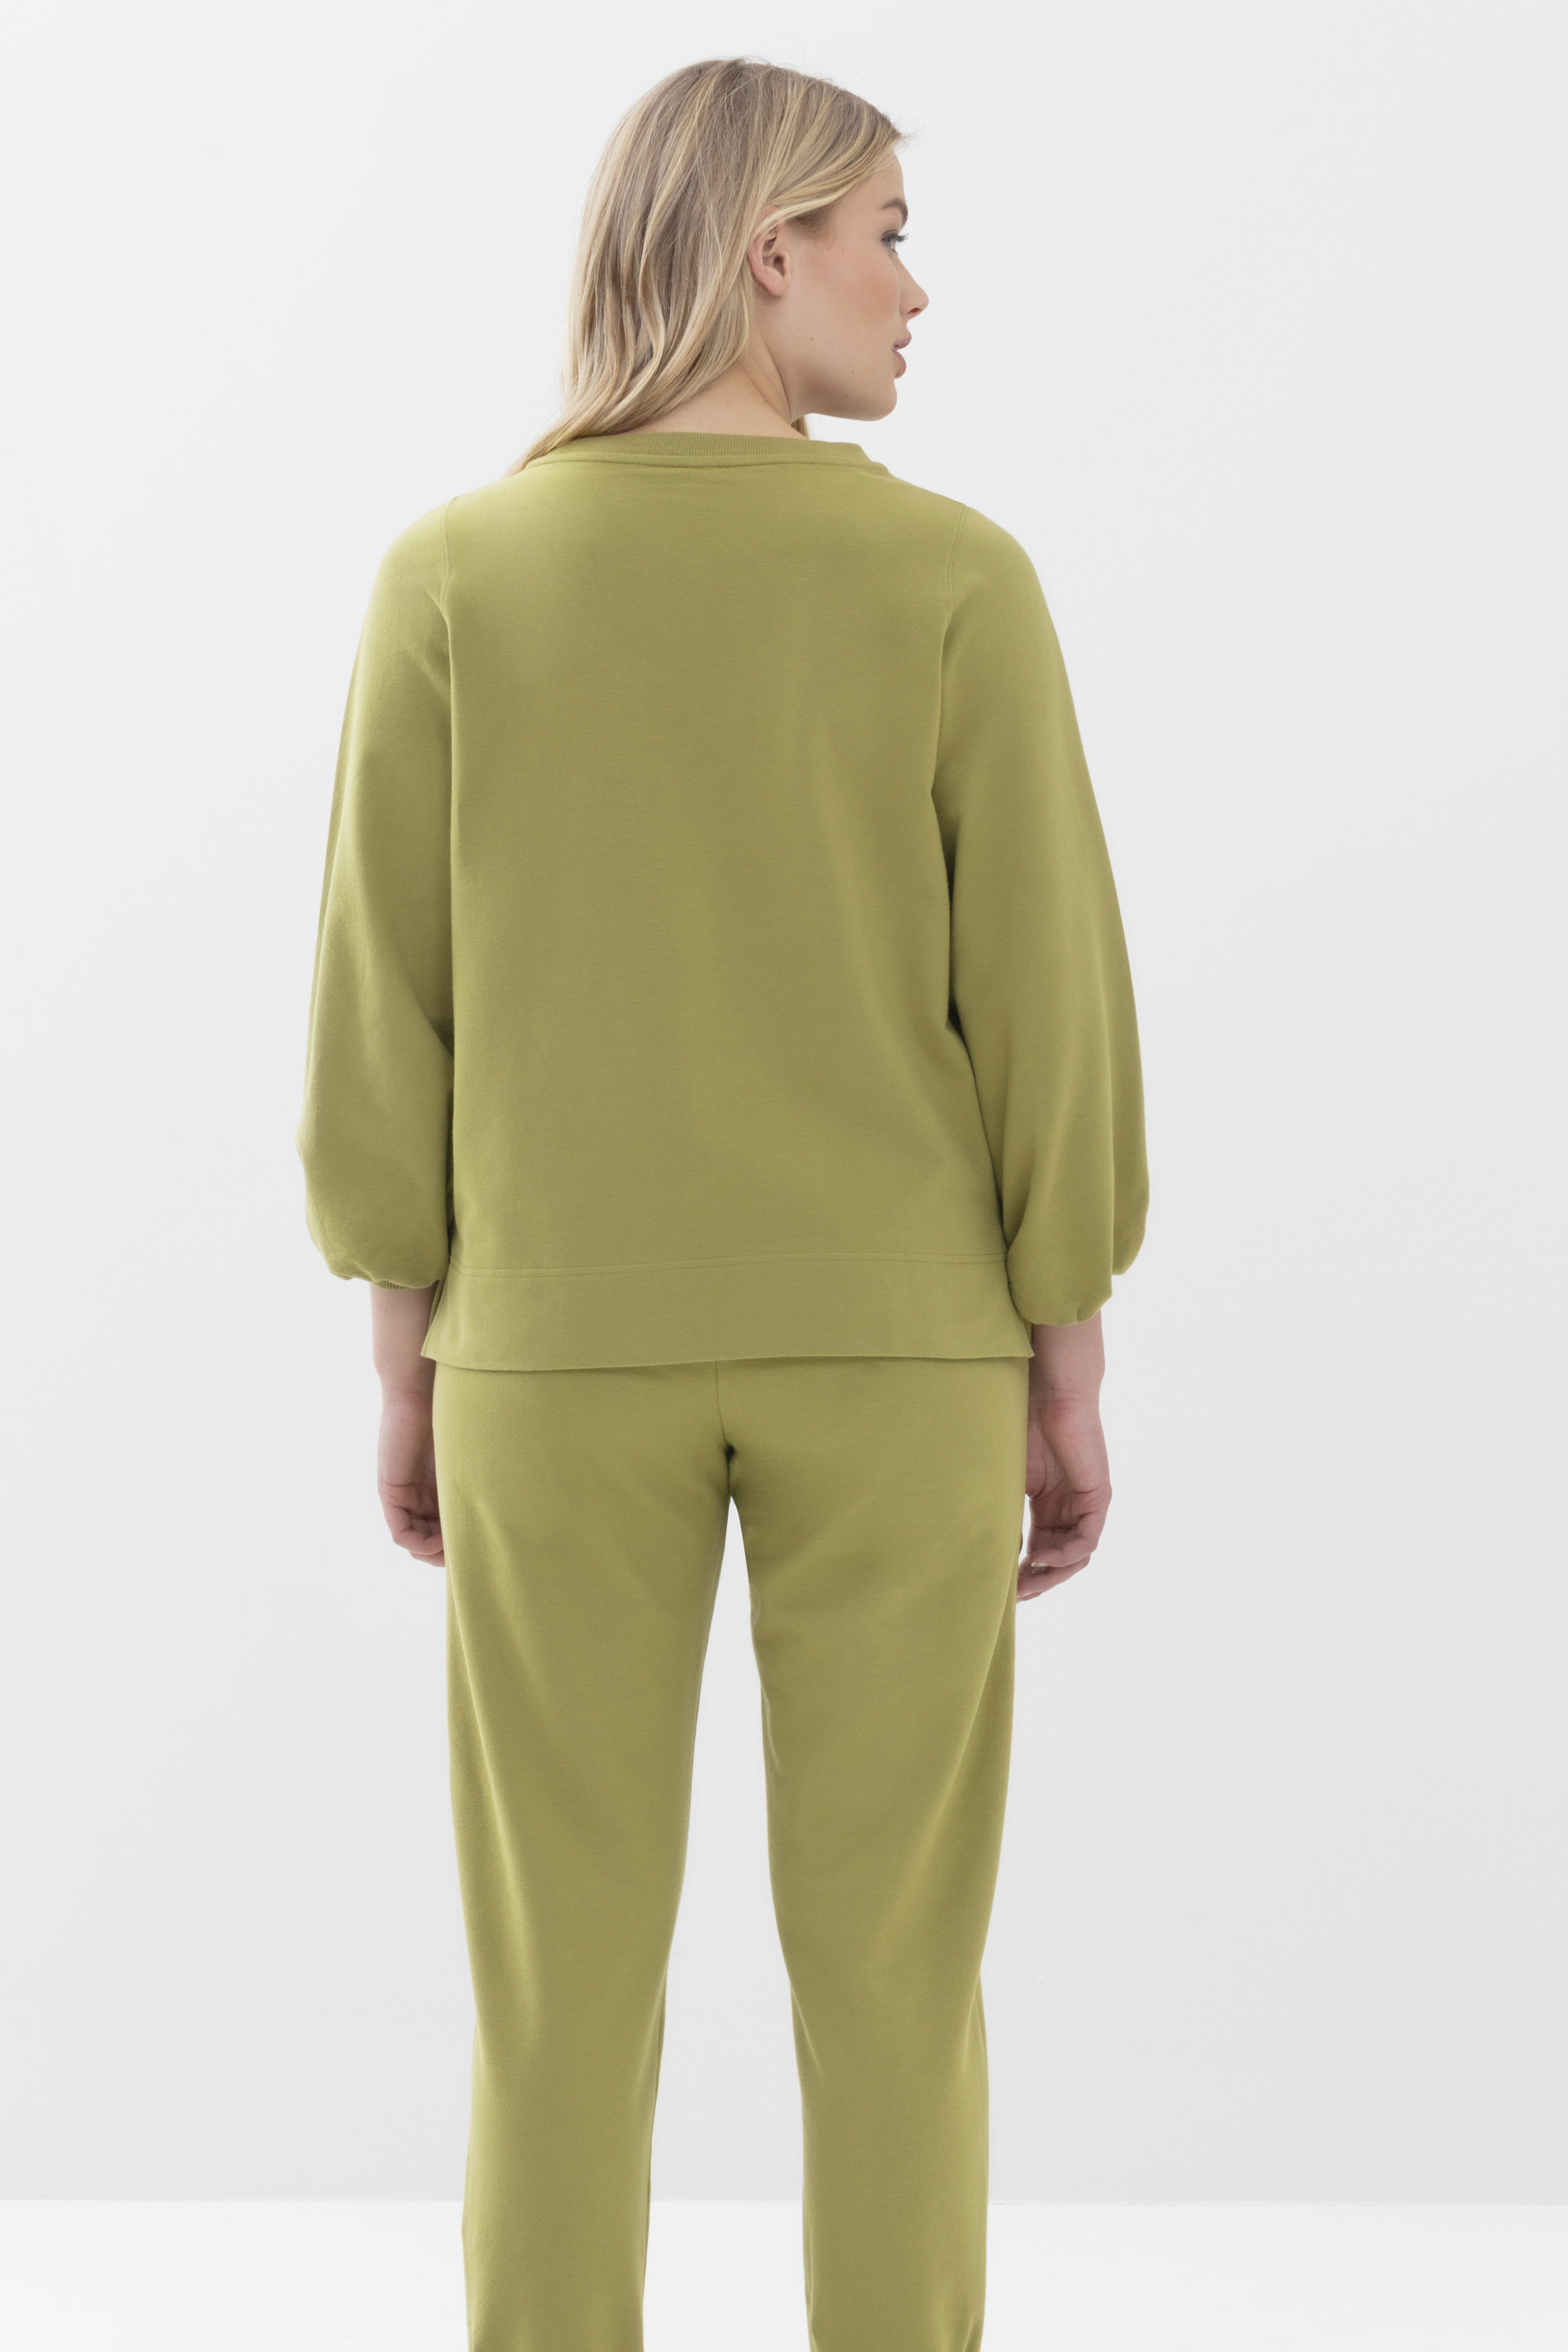 Sweater Tuscan Green Serie Mischa Rückansicht | mey®